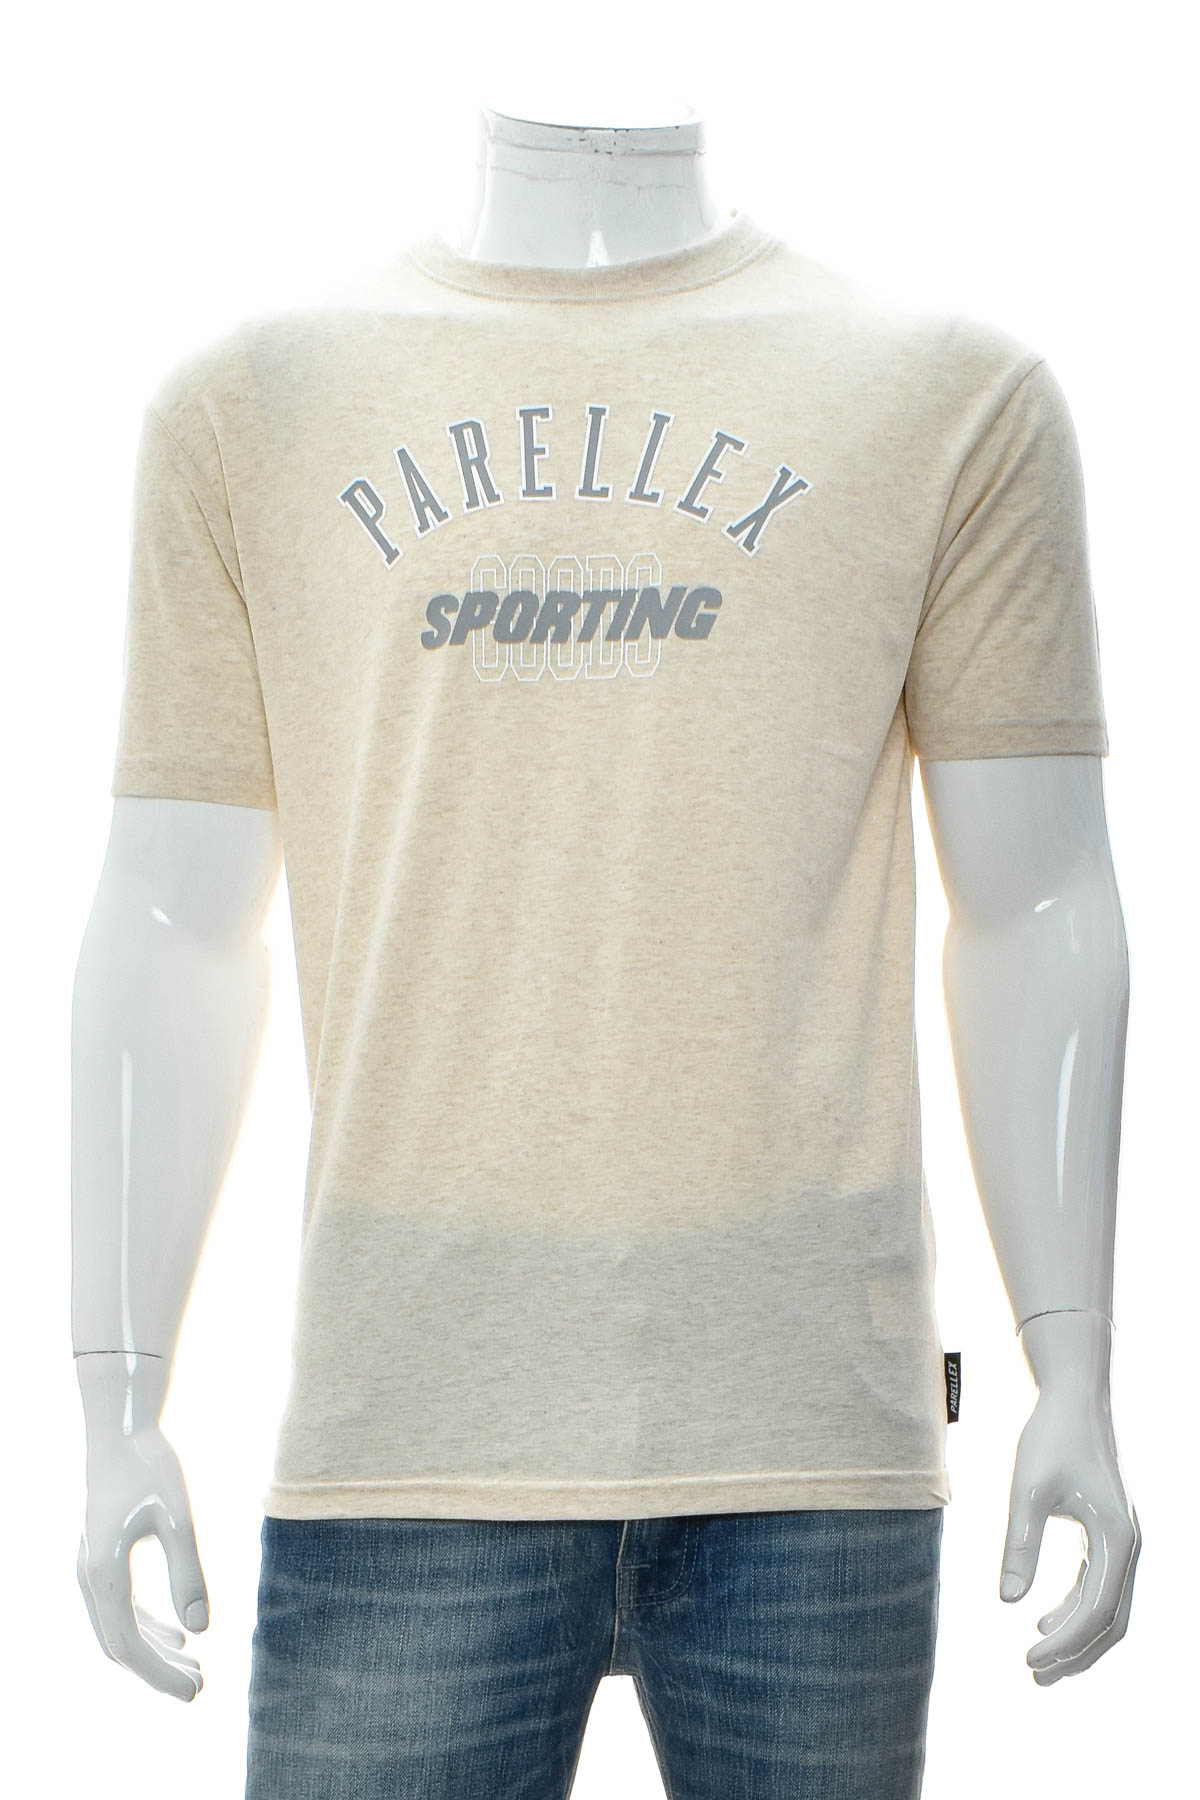 Tricou pentru bărbați - PARELLEX - 0